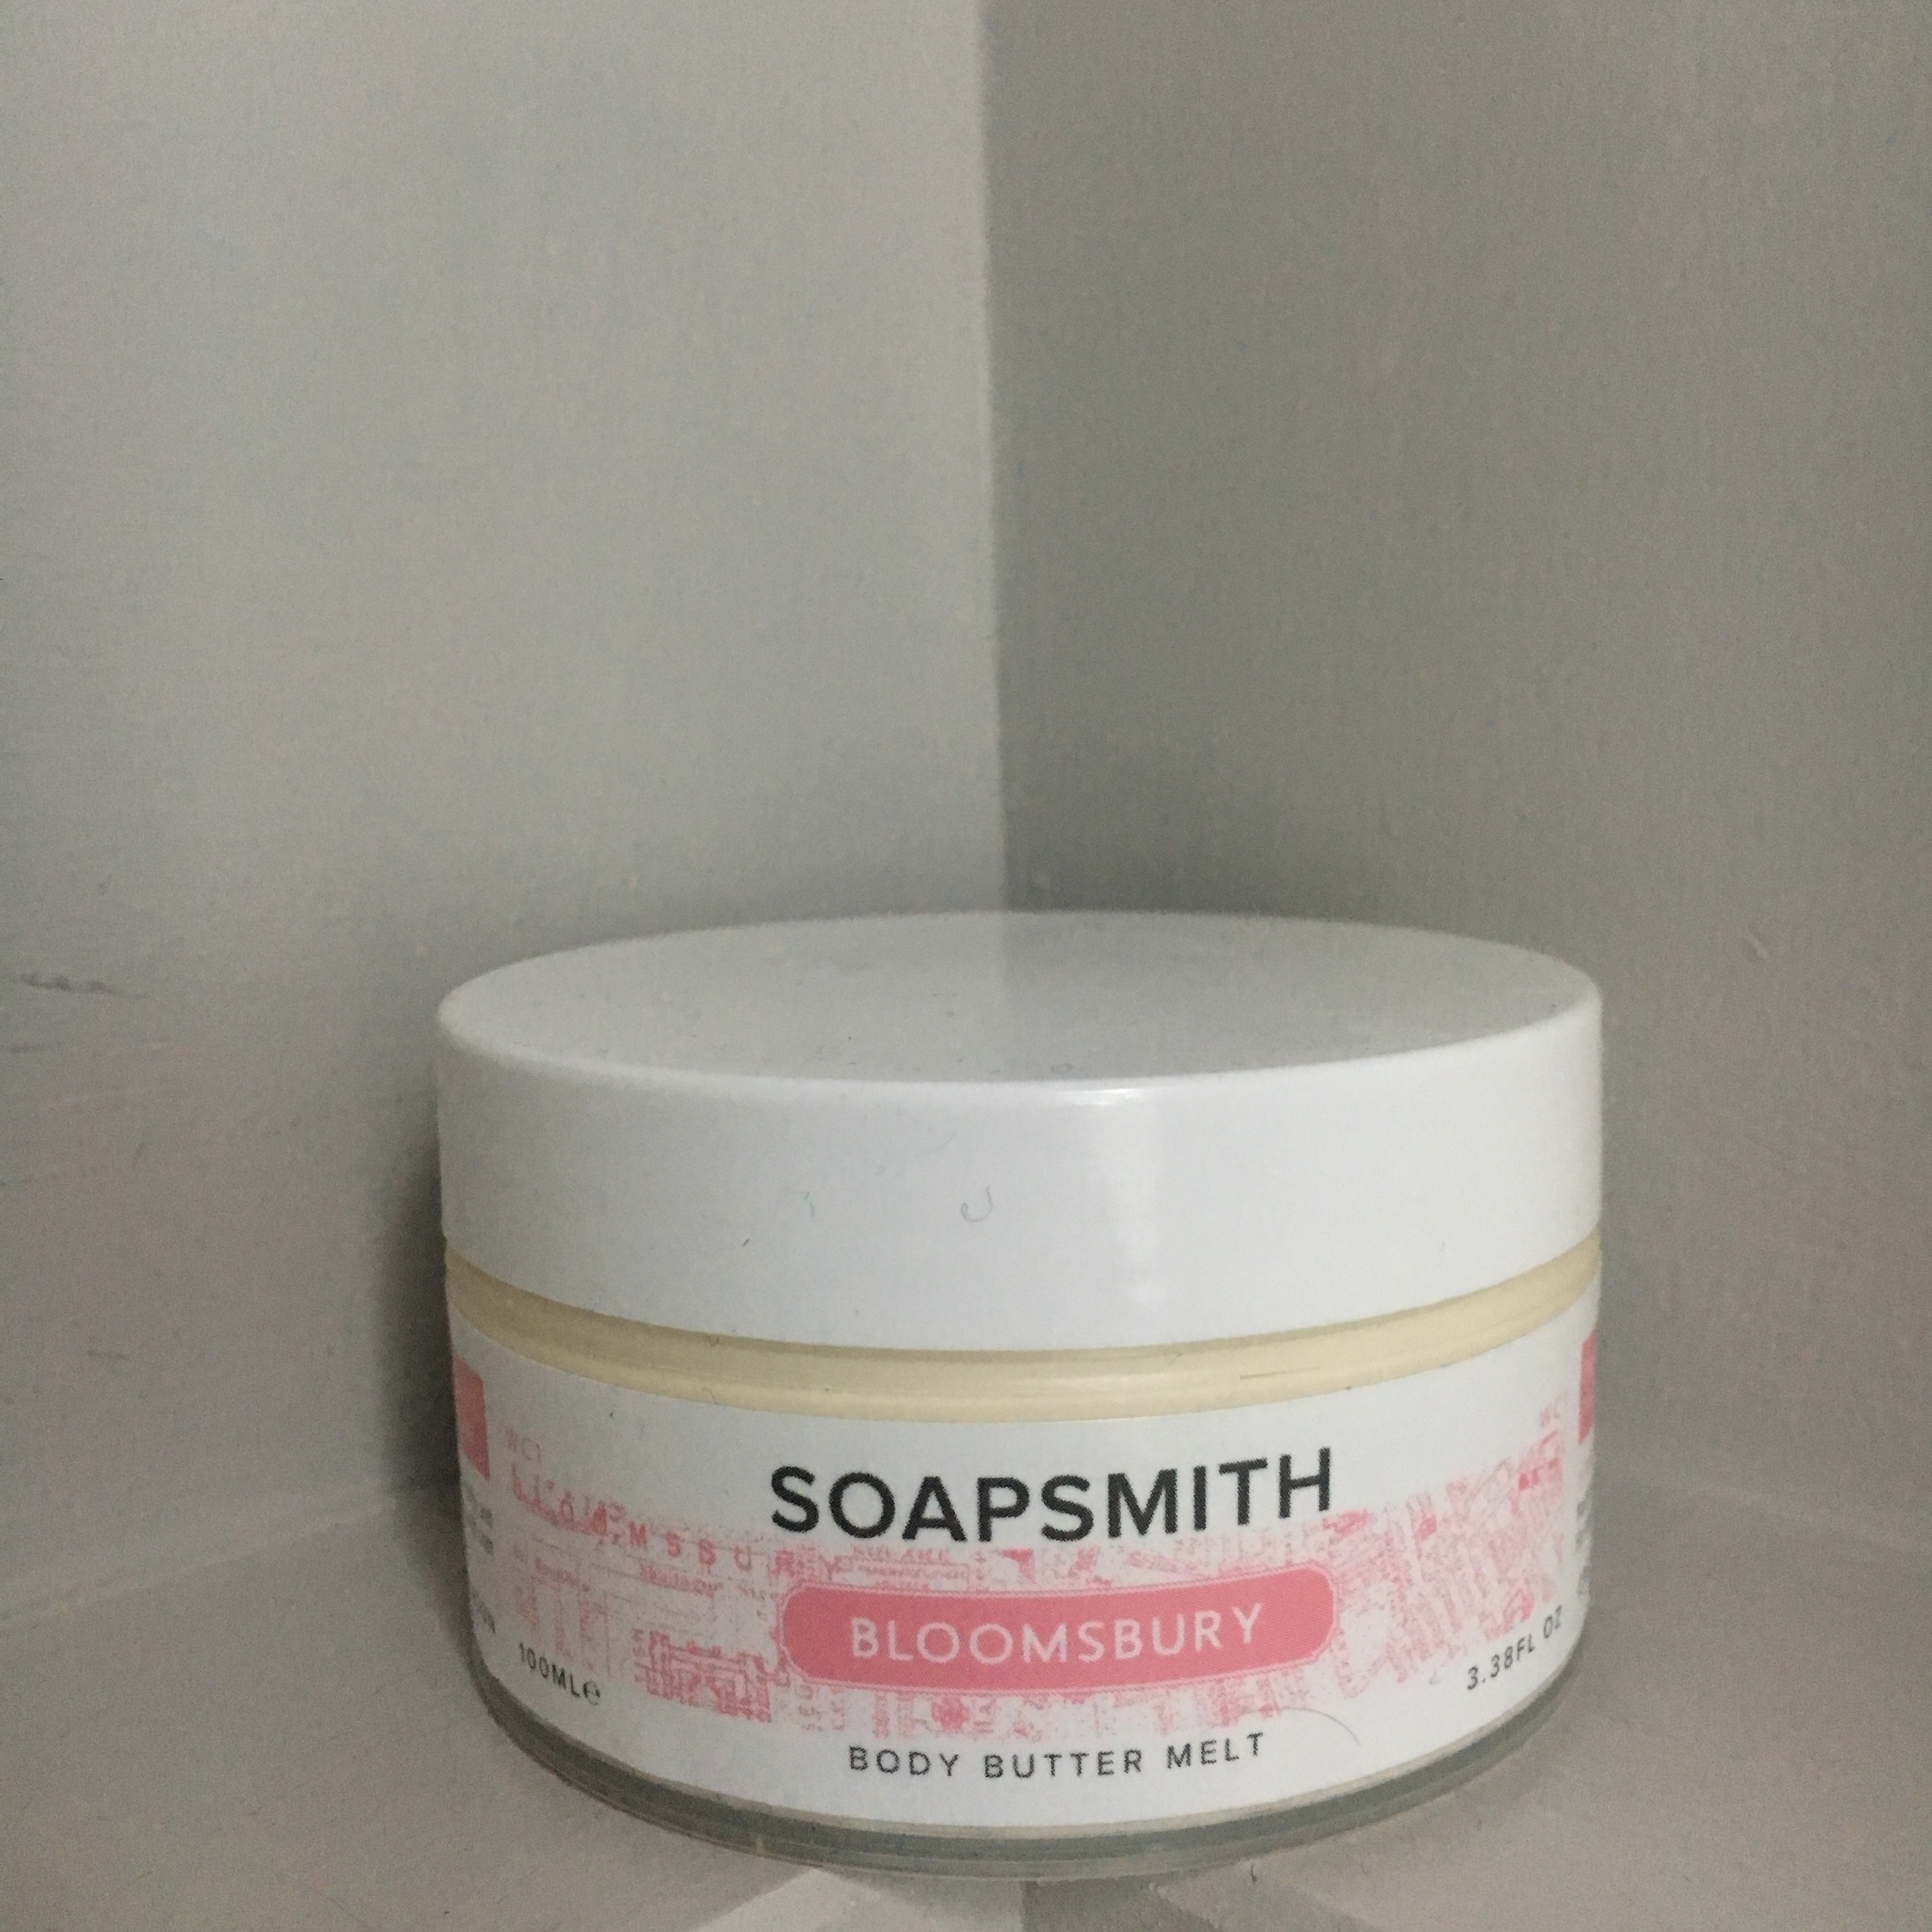 Soap smith